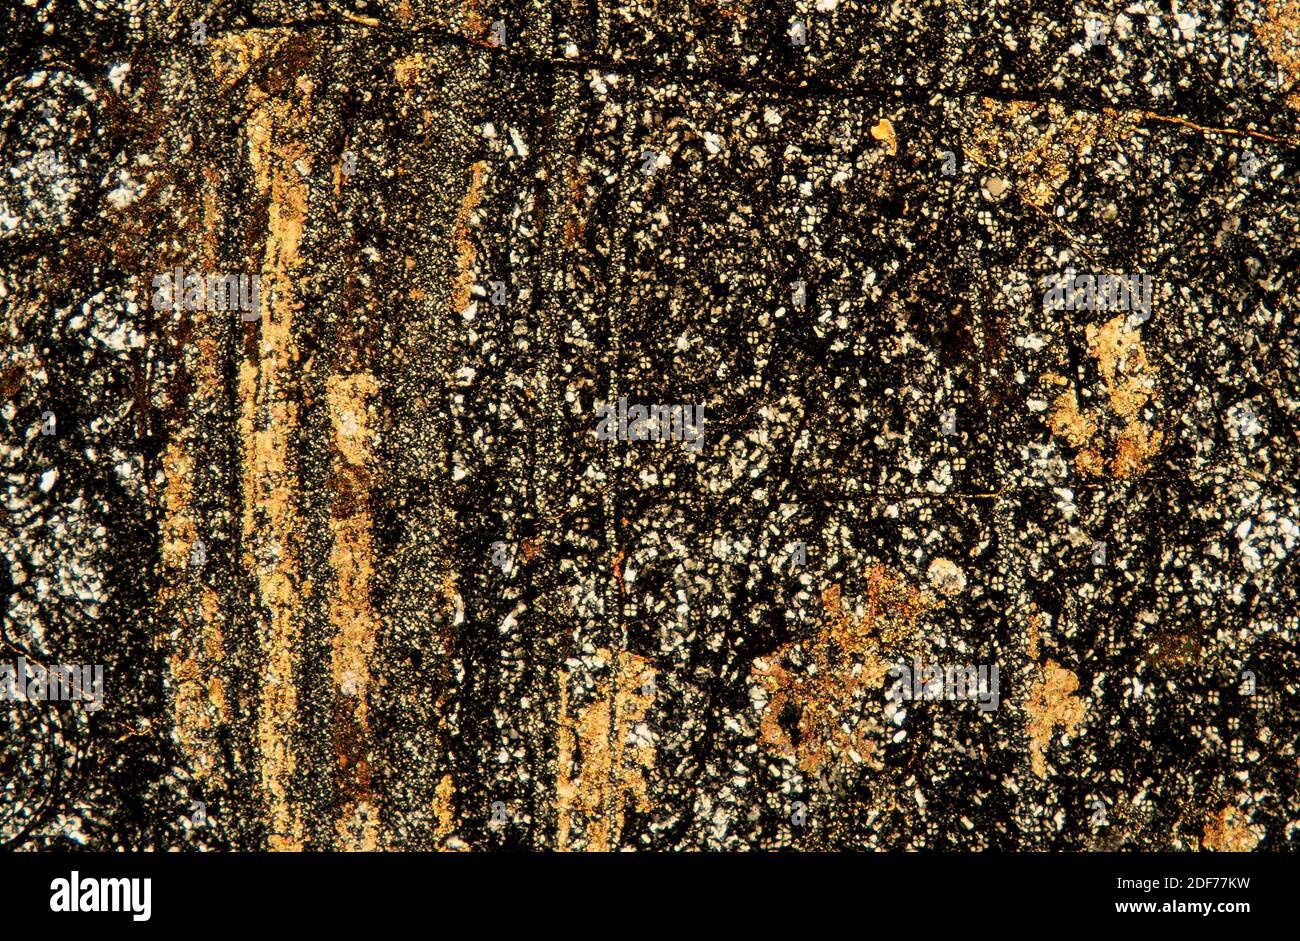 Rhyolit ist ein vulkanisches Gestein, das dem intrusiven Granit entspricht. Photomikrograph, dünner Abschnitt, polarisiertes Licht. Stockfoto